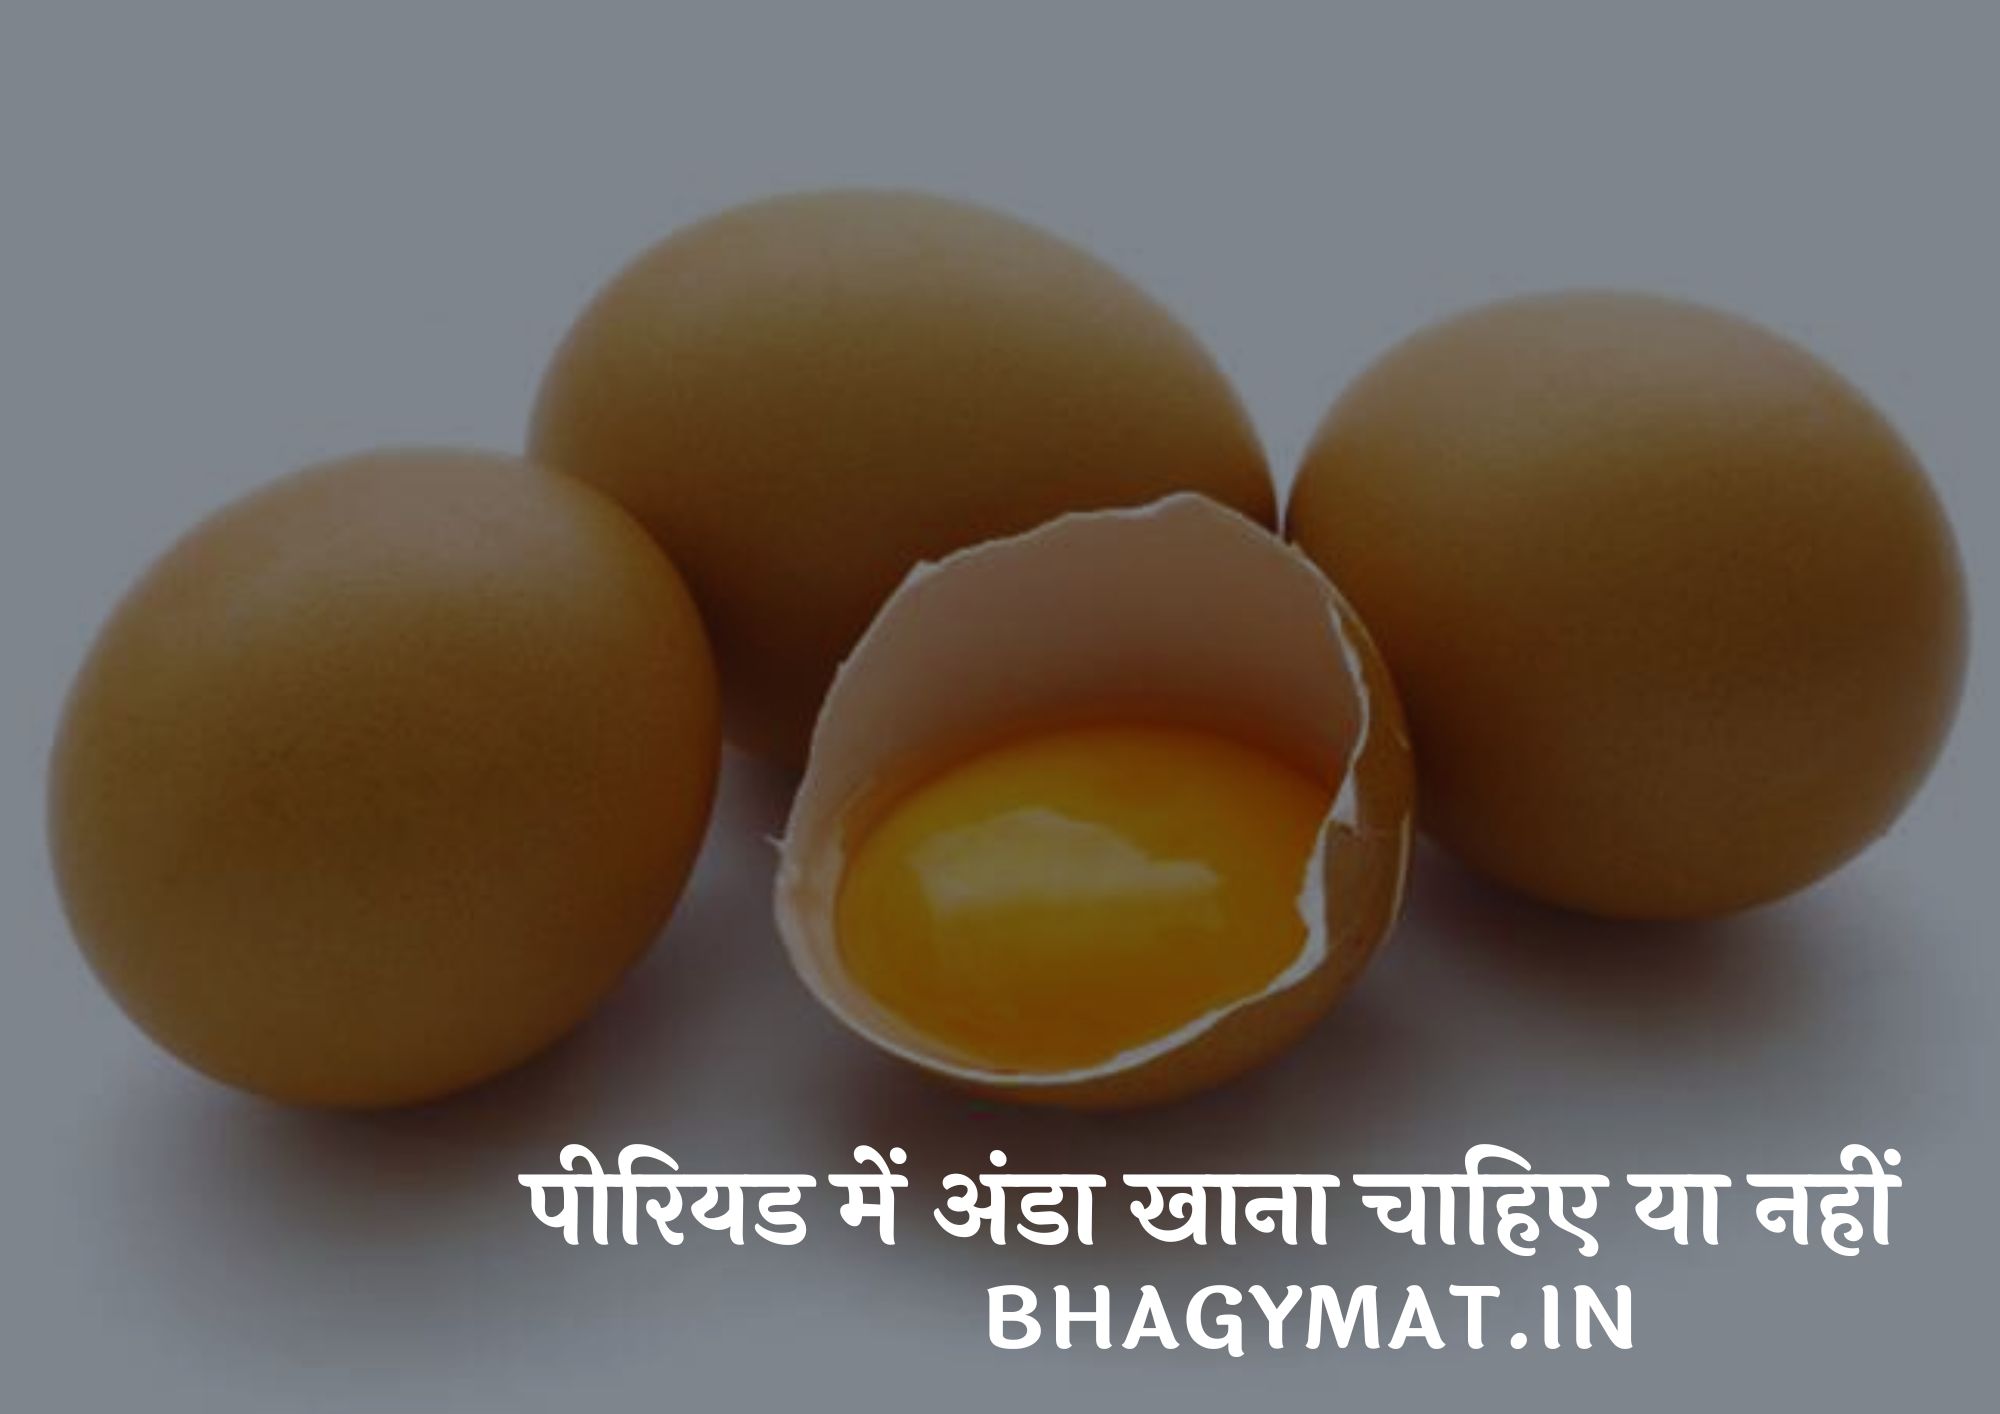 पीरियड में अंडा खाना चाहिए या नहीं हिंदी में (Periods Me Anda Khana Chahiye Ya Nahi)